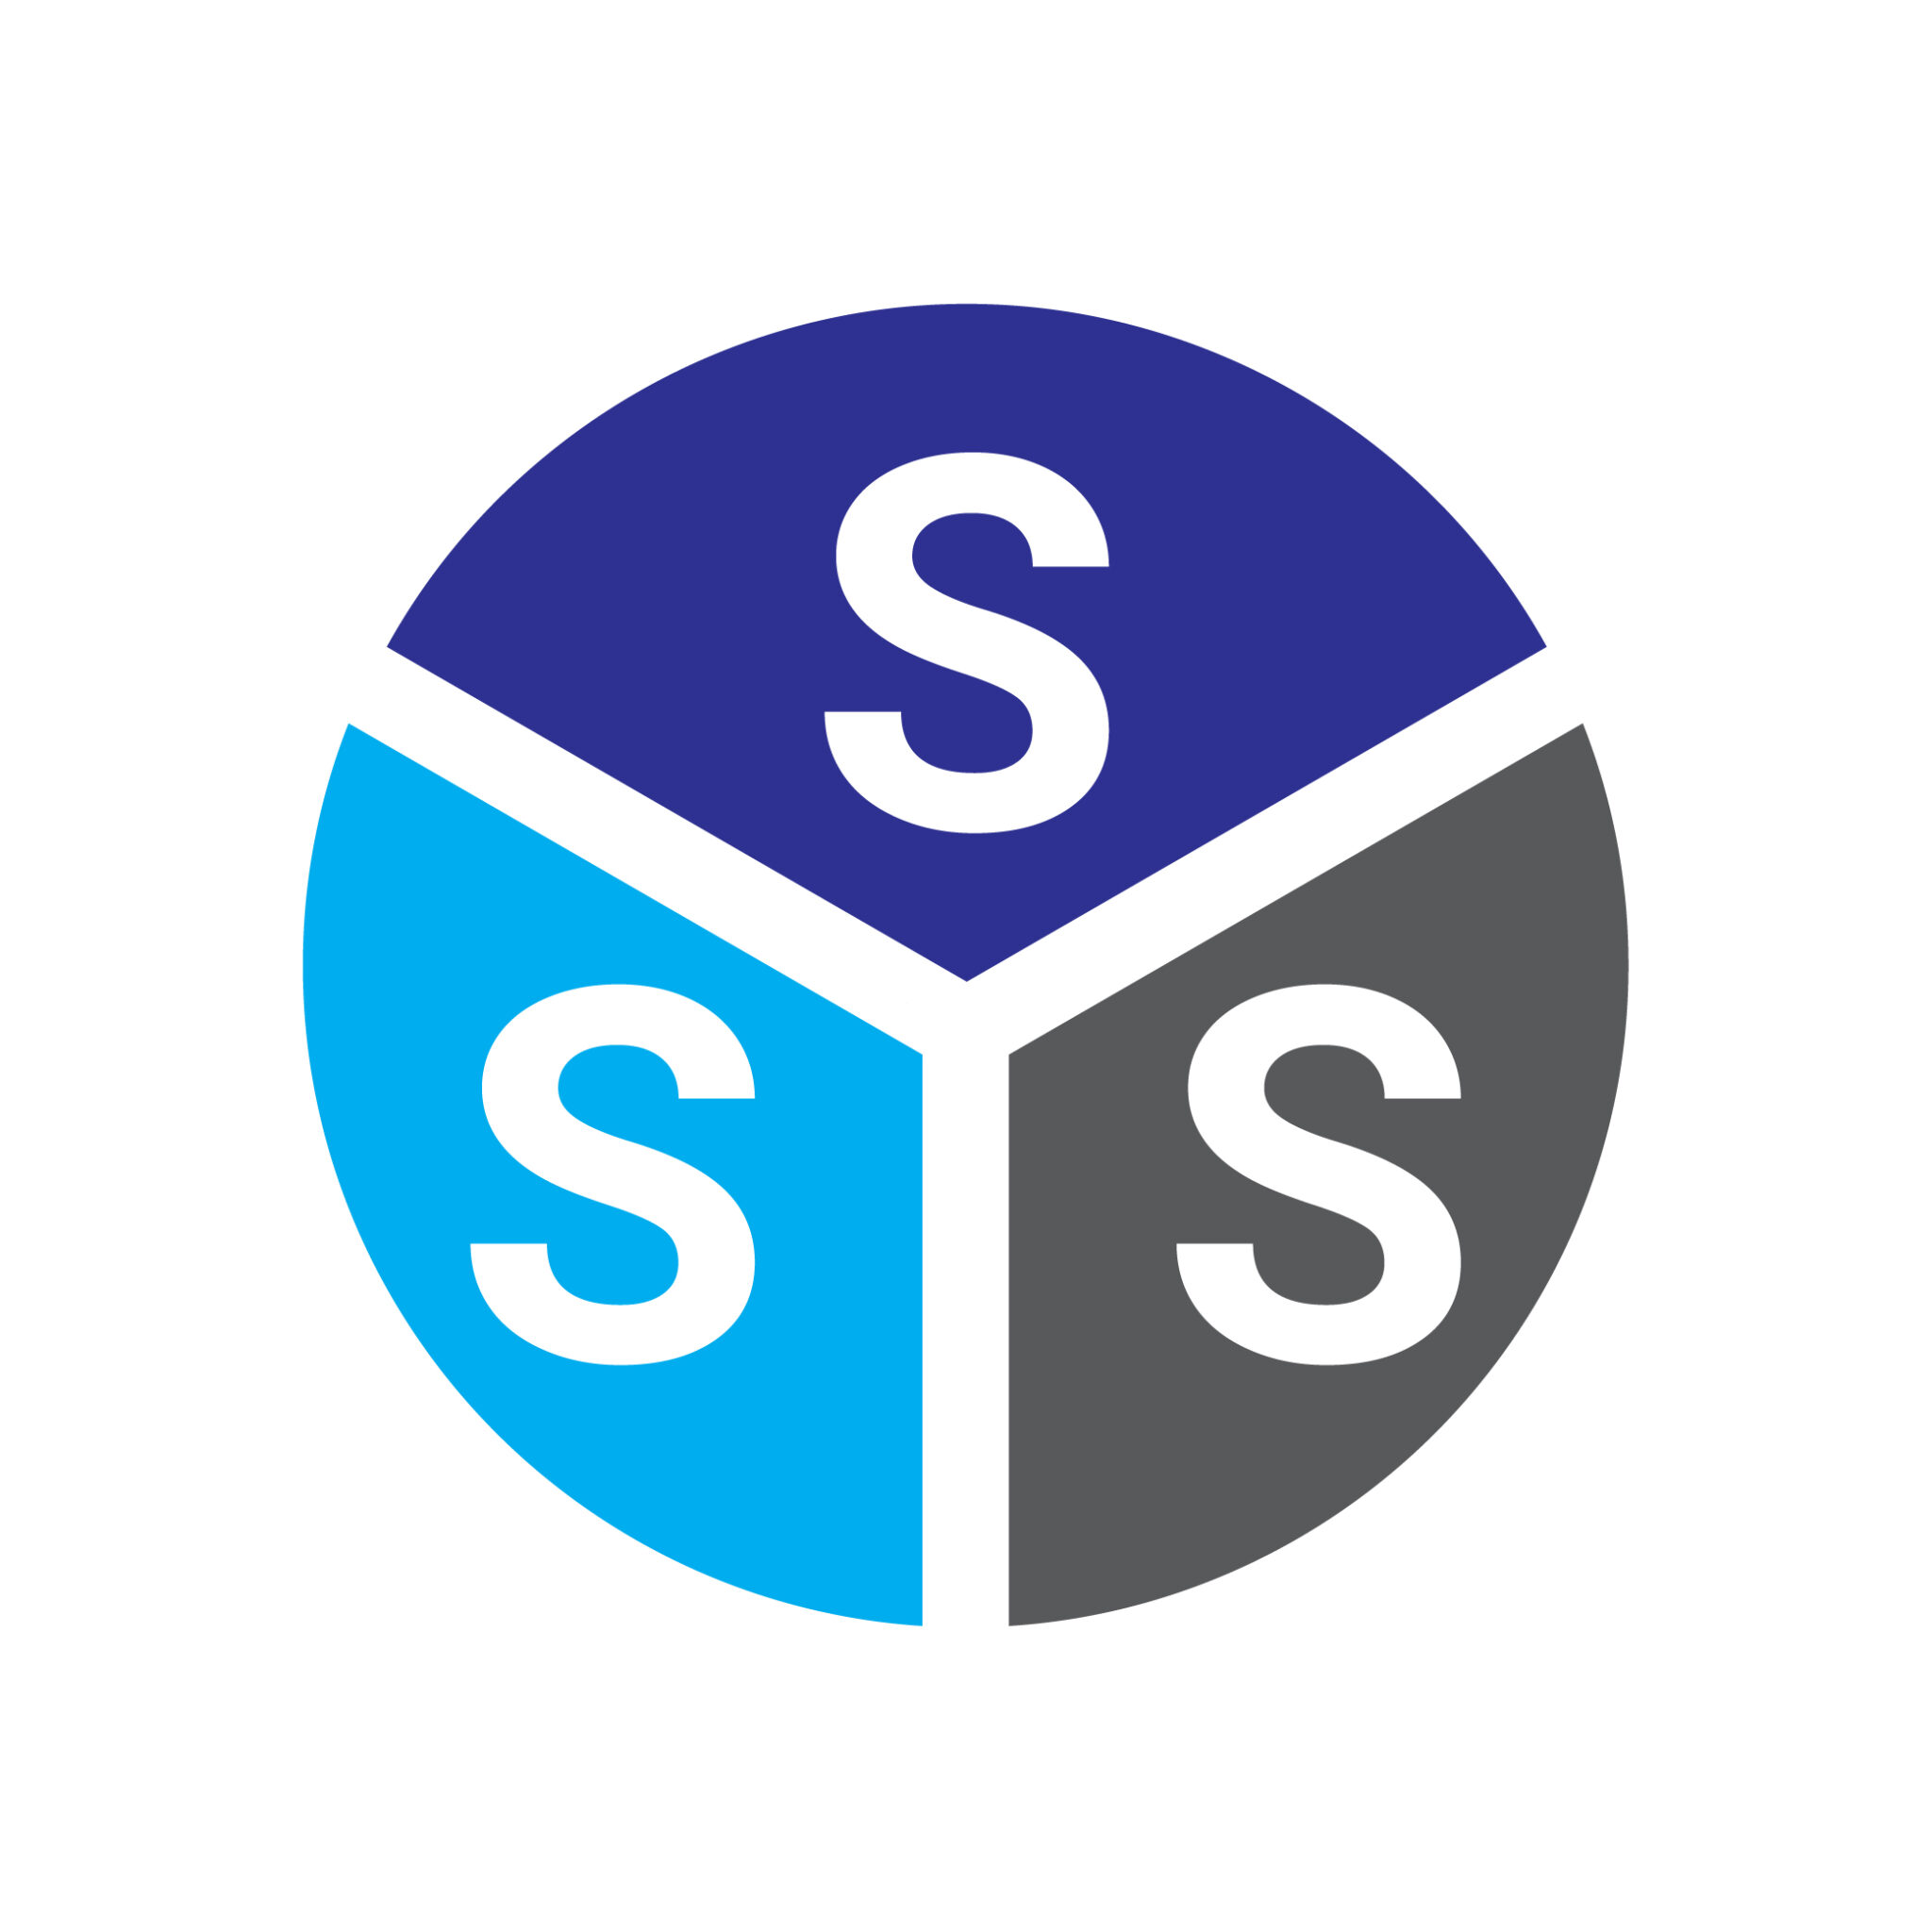 Letter SSS Logo or Icon Design Vector Image - MasterBundles